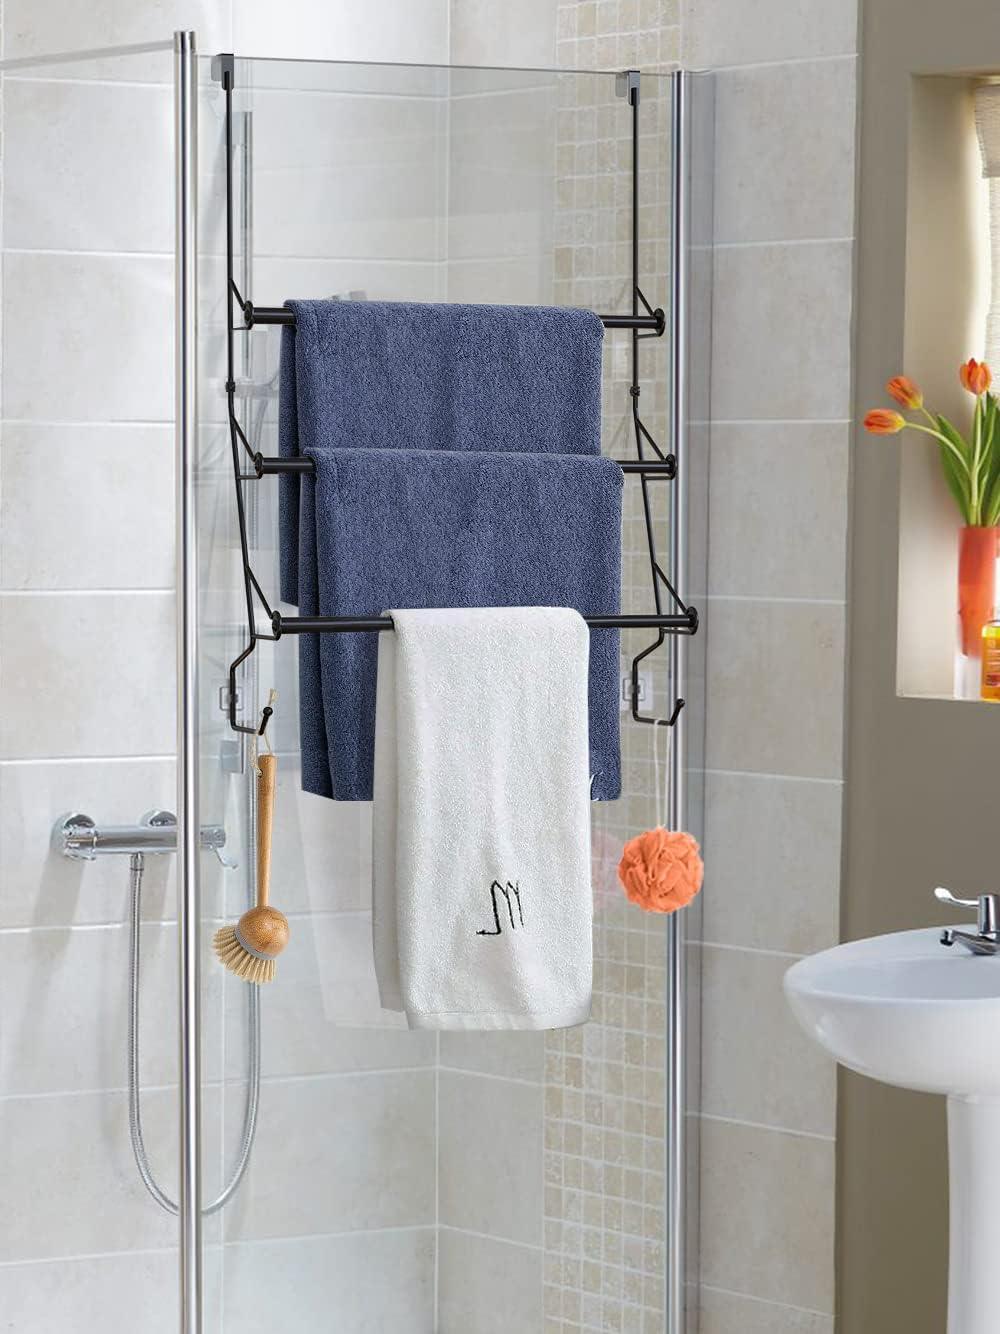  LIFENGNR Moderno toallero, escalera, soporte de toalla con 5  barras de pino duradero, práctico cuarto de baño para toallas de mano o  toallas de baño, 63.0 x 17.7 in (color madera) 